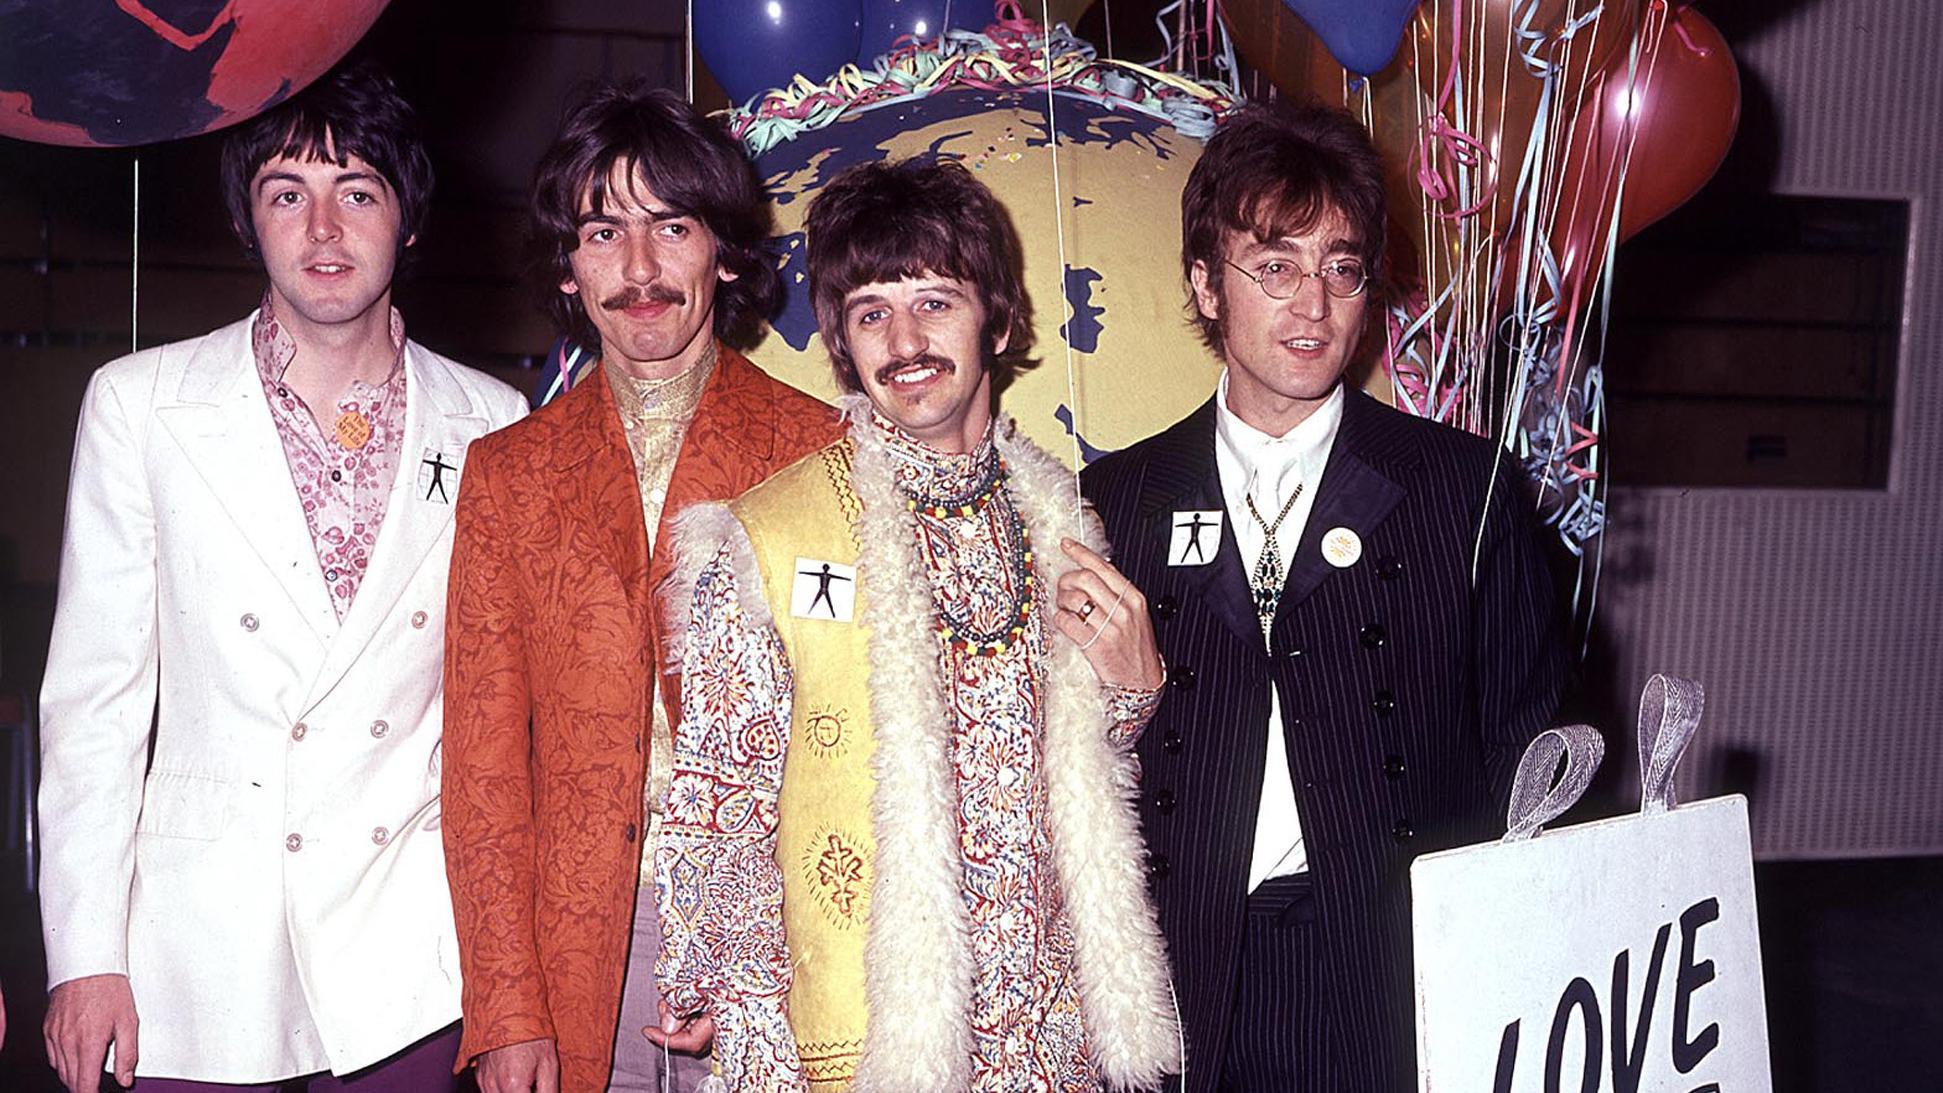 Paul McCartney, BBC’ye verdiği röportajında efsanevi müzik grubu Beatles’ın son albümü olarak nitelendirilebilecek kaydı yapay zekanın verdiği imkanlar ile gerçekleştirdiklerini anlattı.